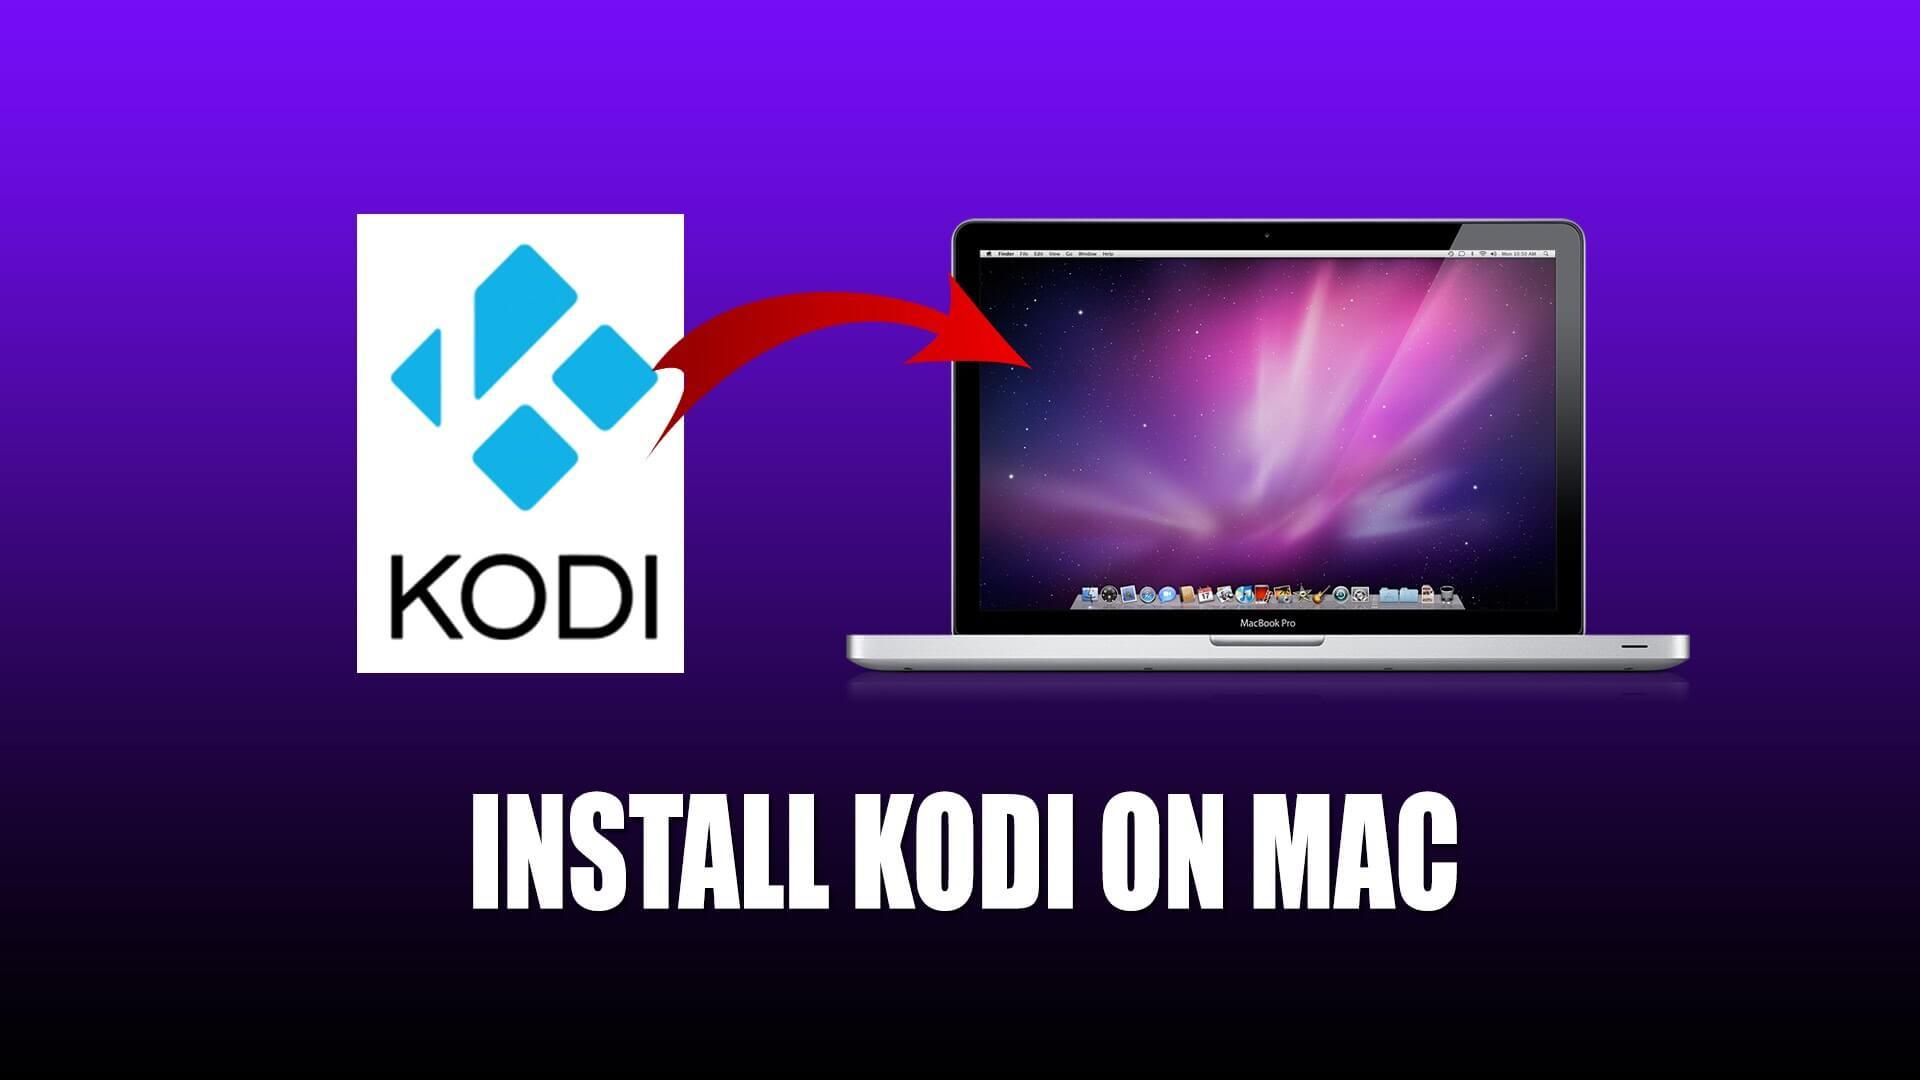 kodi for mac 10.7.5 download